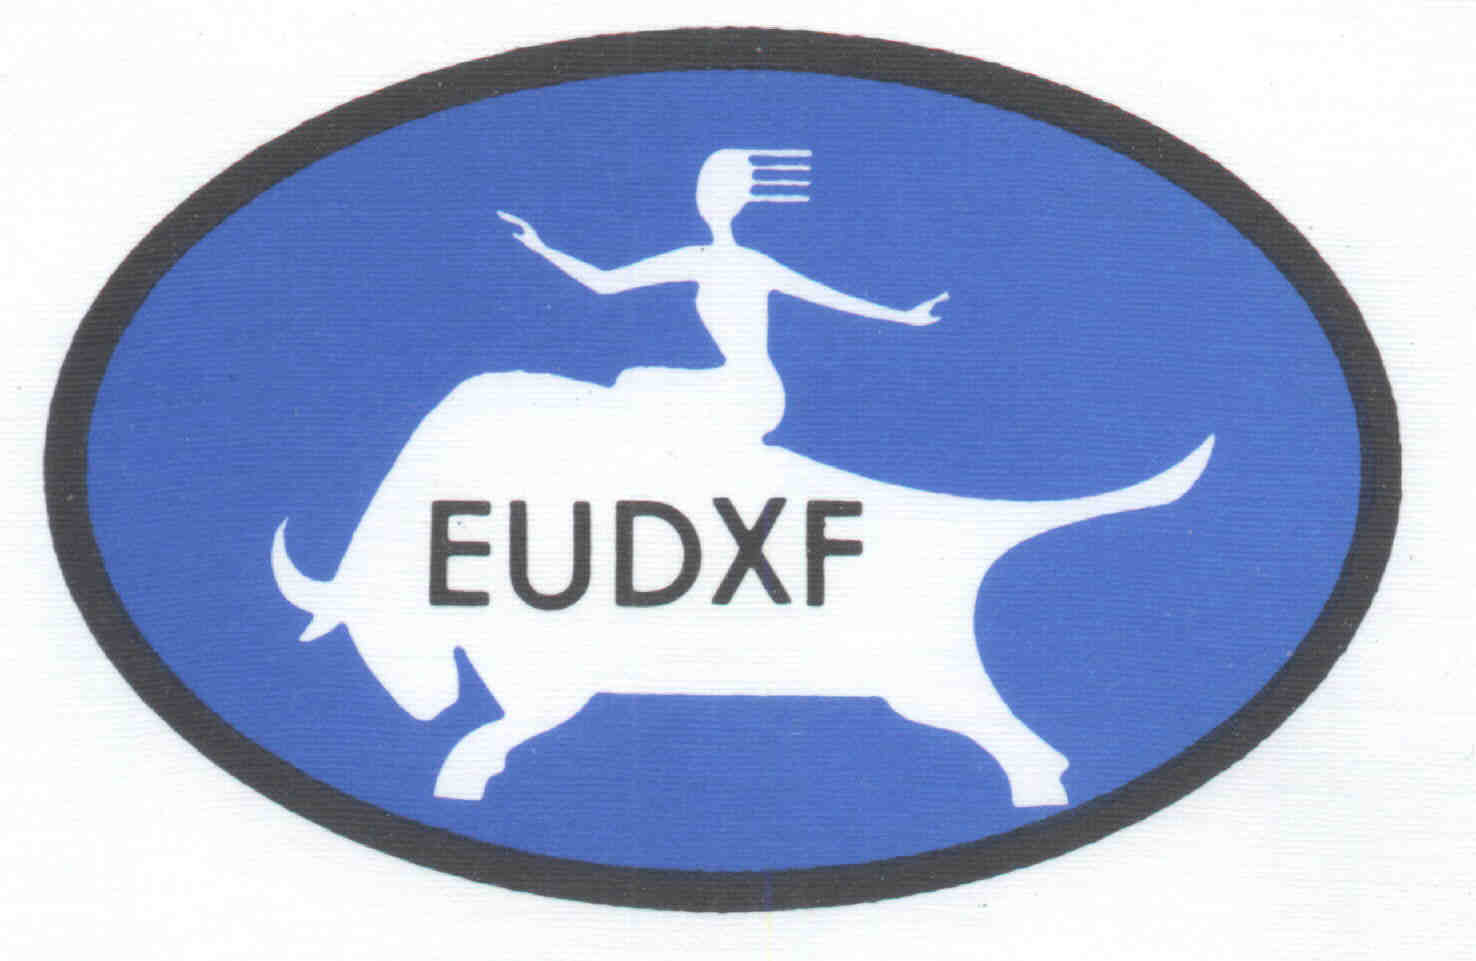 eudx